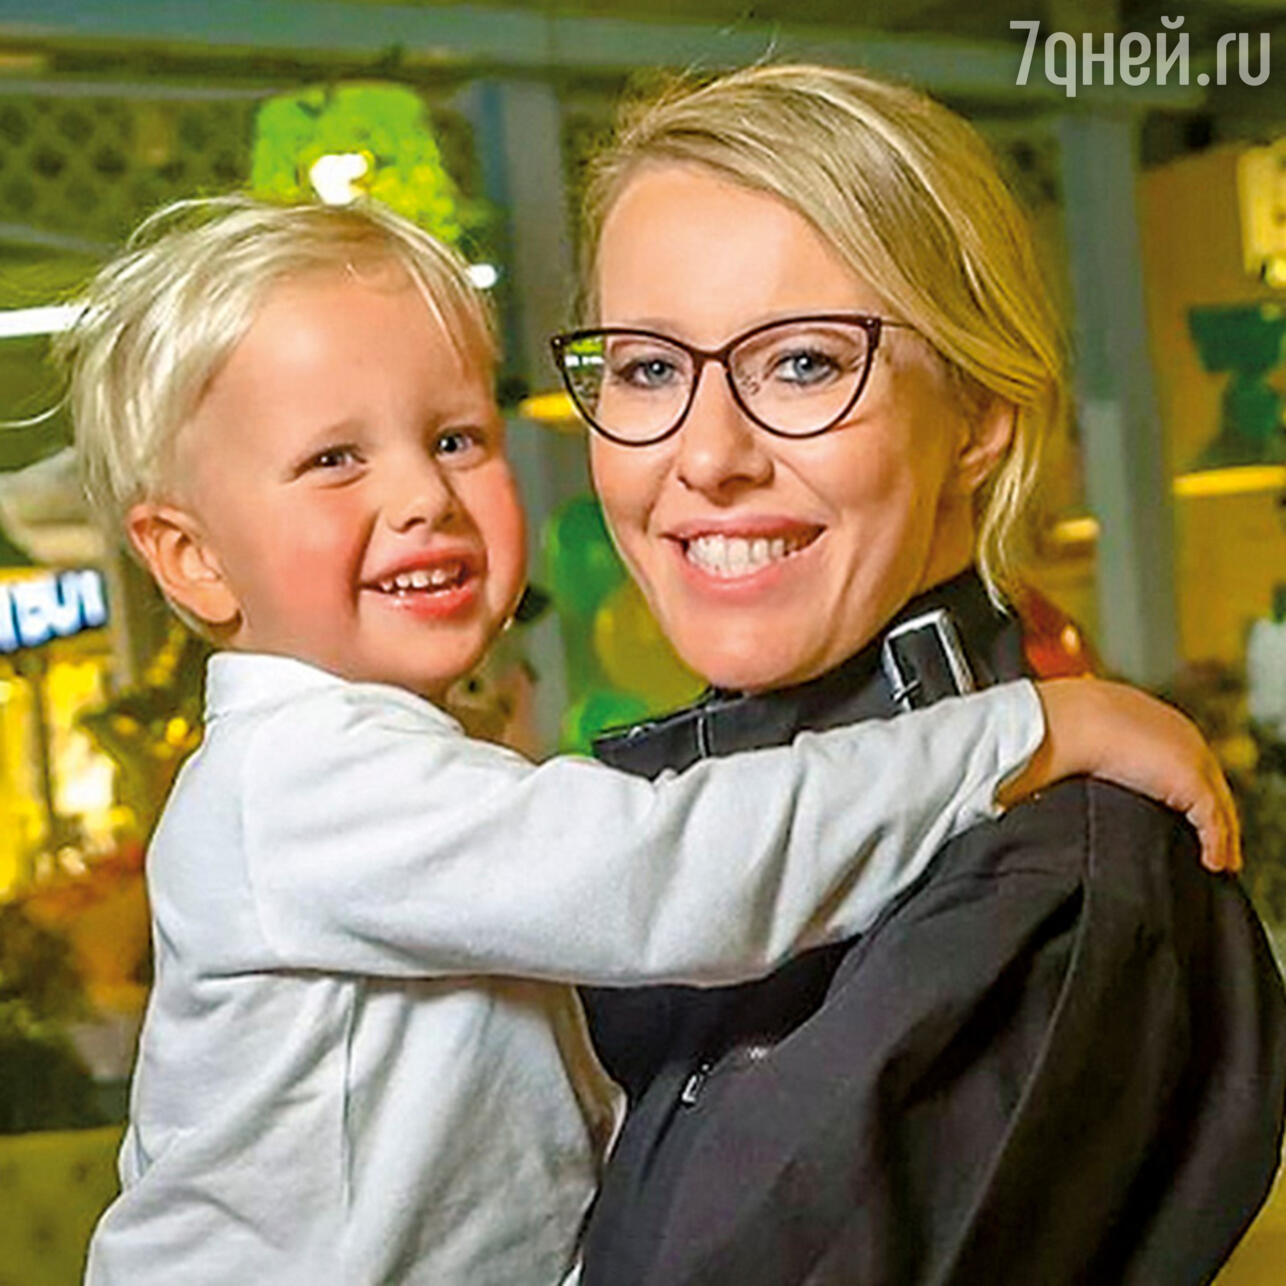 Ксения Собчак показала подросшего сына в Instagram.